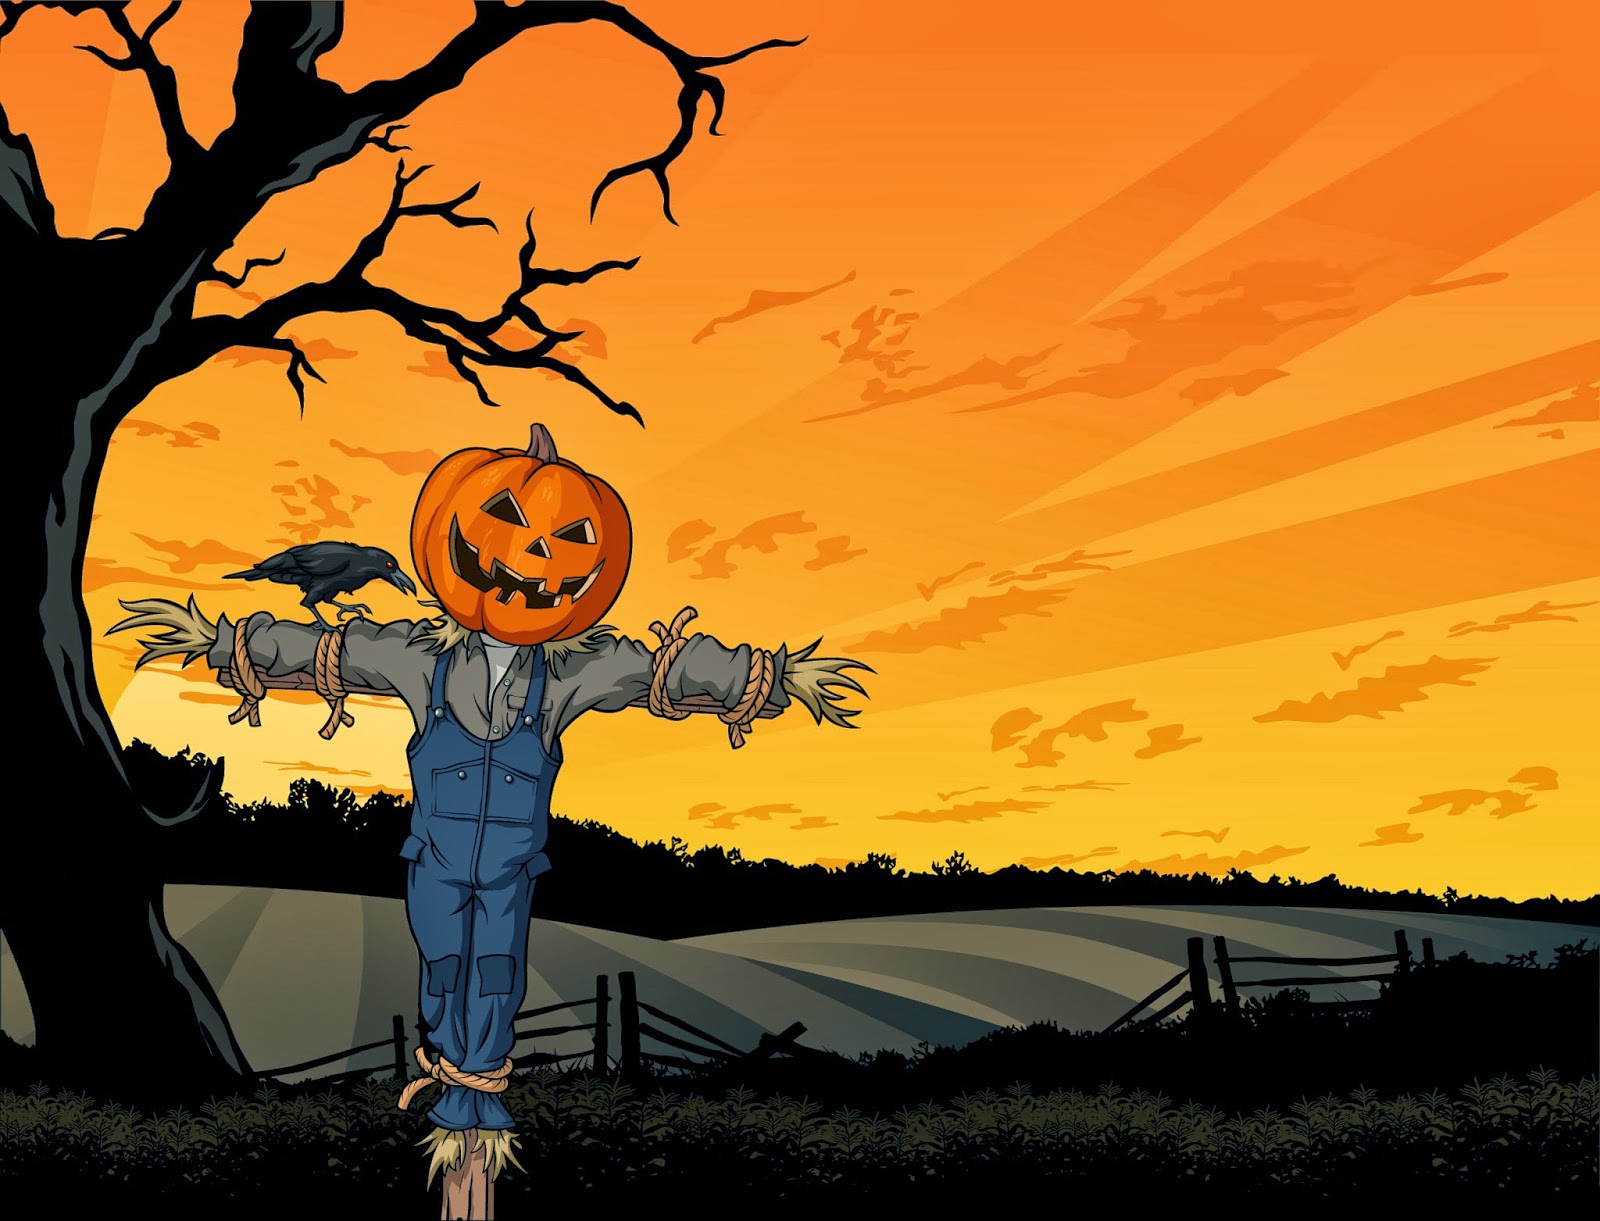 Halloween HD Wallpaper 1080p Desktop Image Background